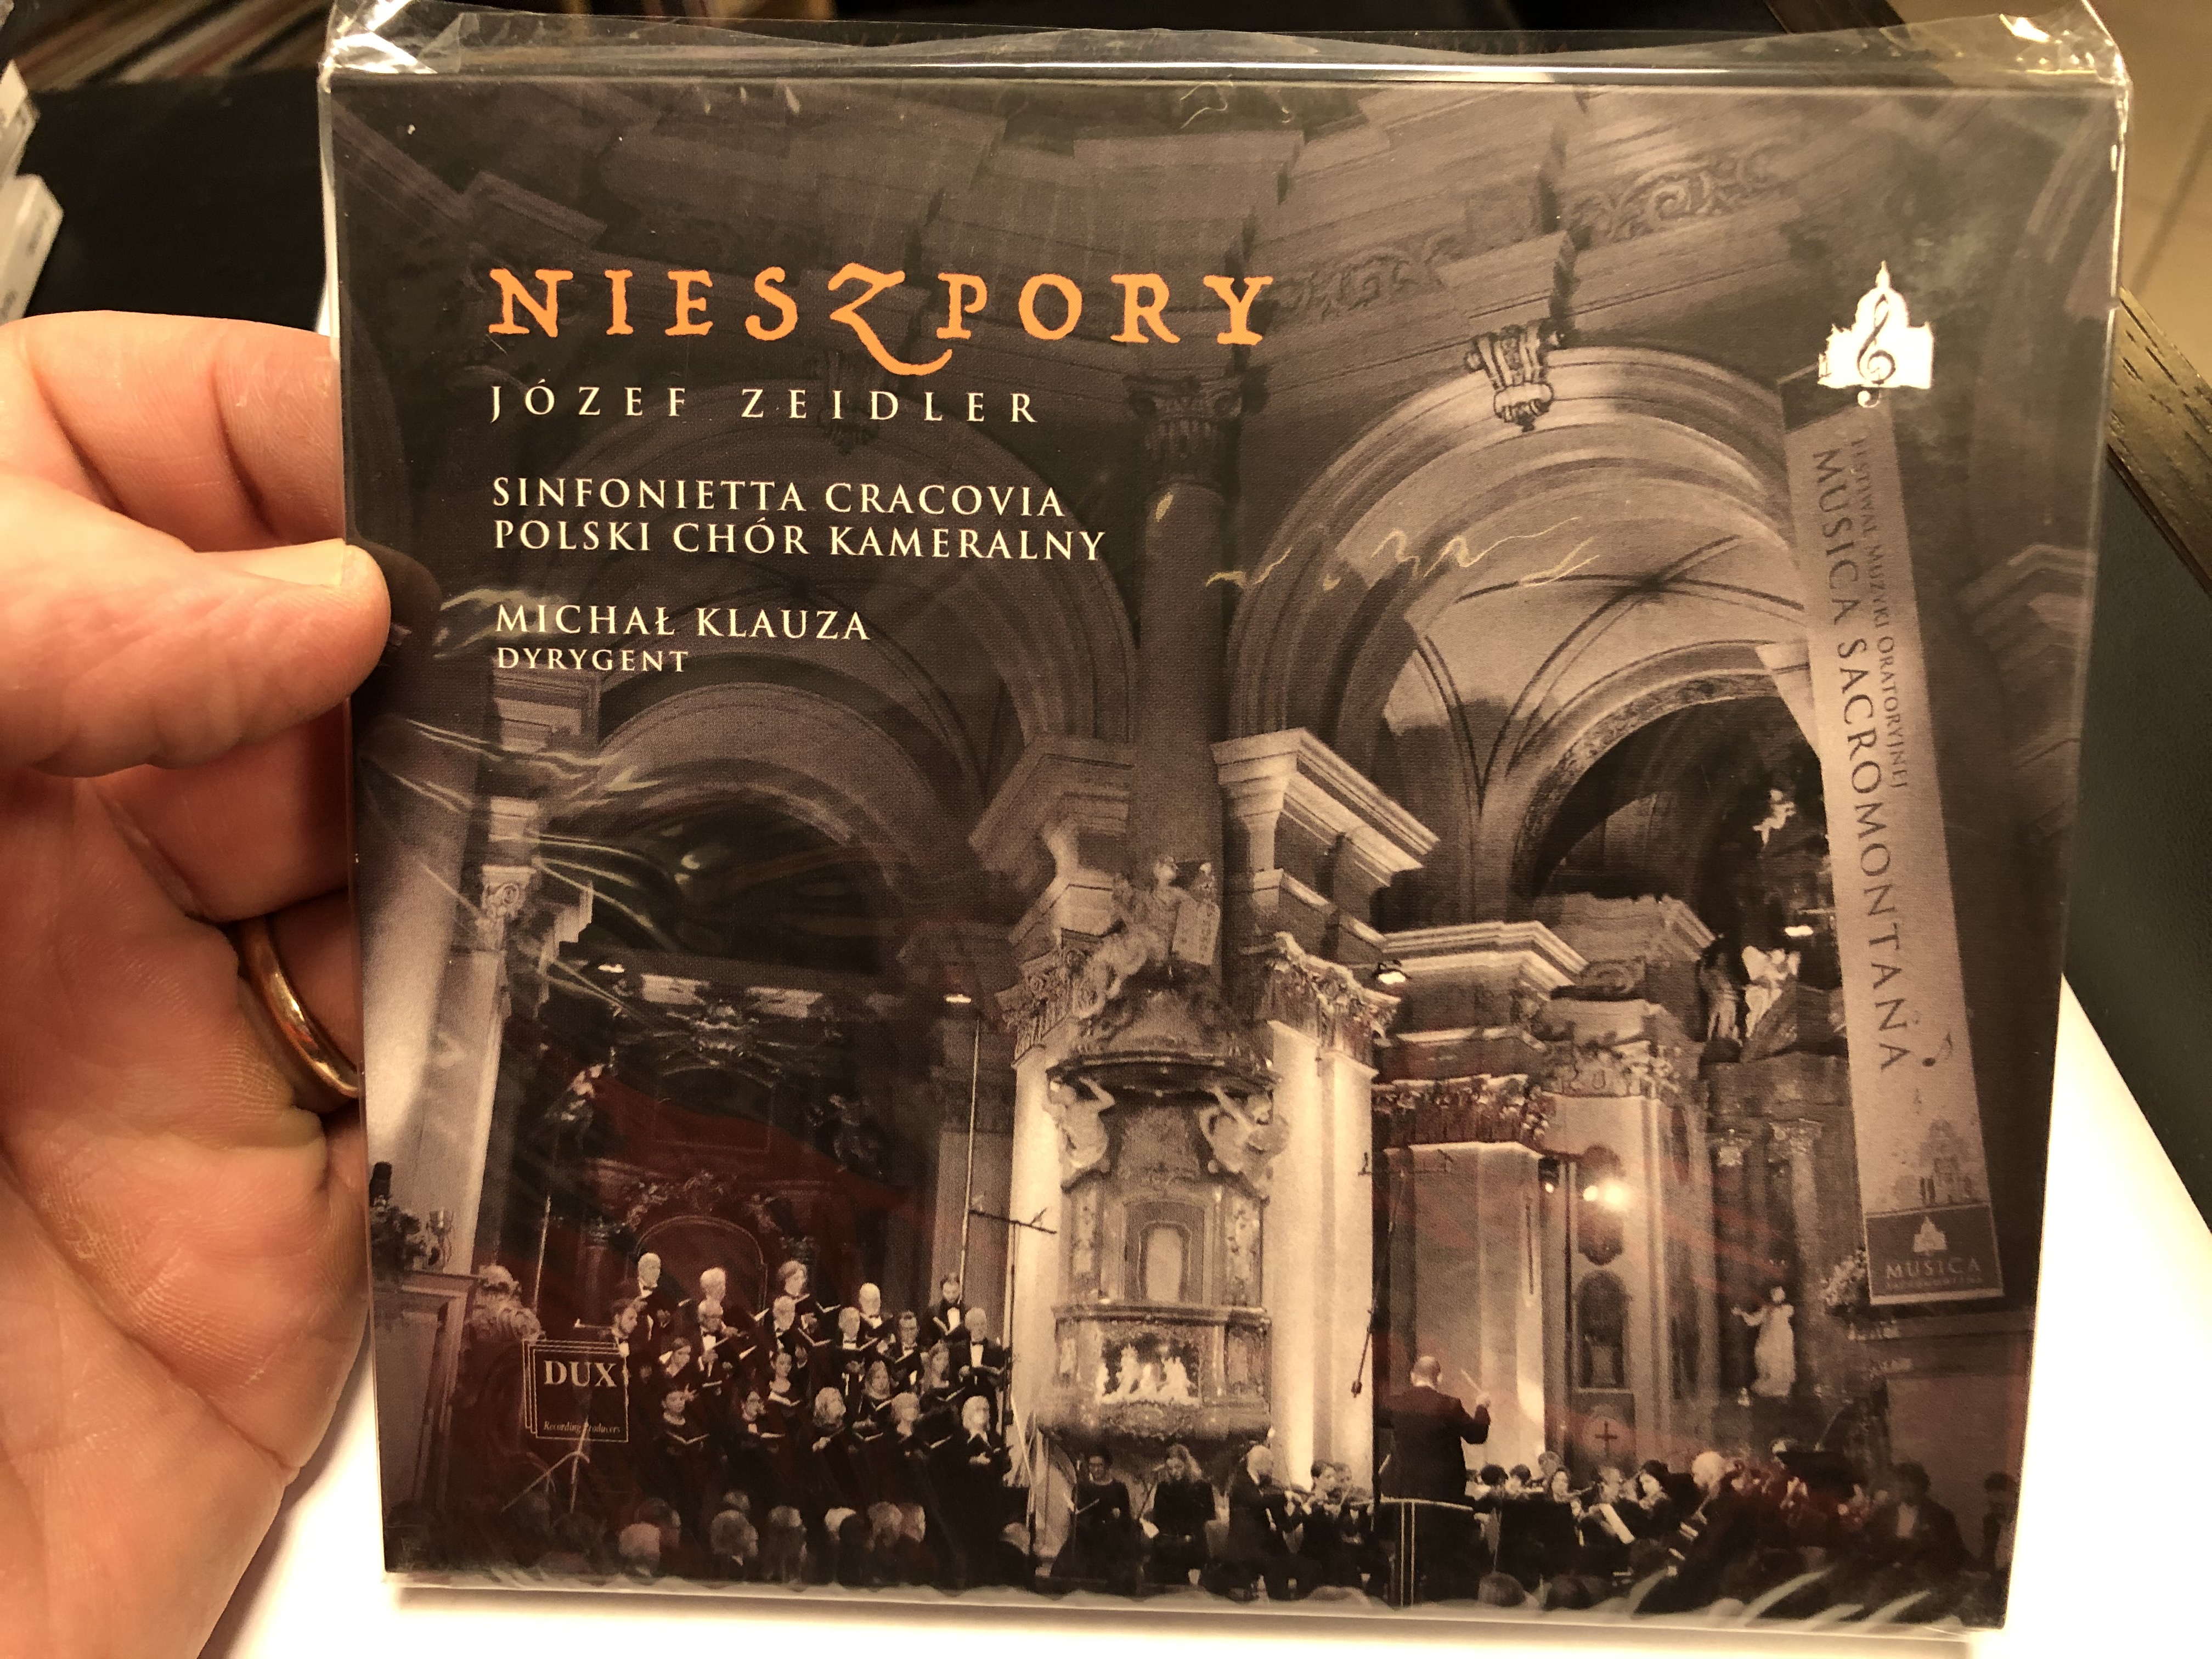 nieszpory-jozef-zeidler-sinfonietta-cracovia-polski-chor-kameralny-michal-klauza-dyrygent-dux-recording-audio-cd-2020-dux-1575-1-.jpg